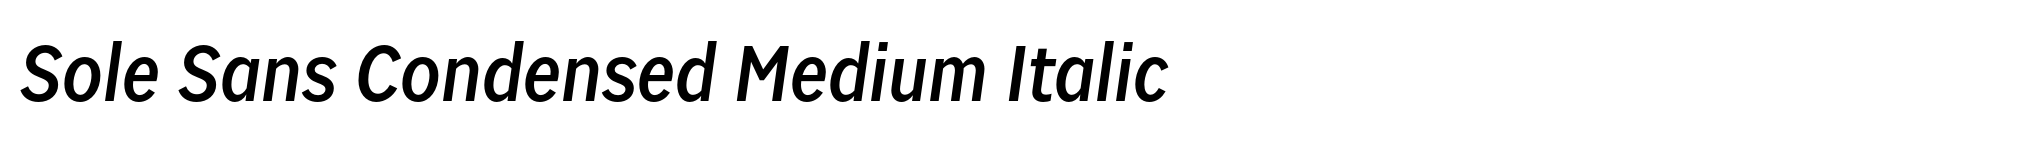 Sole Sans Condensed Medium Italic image